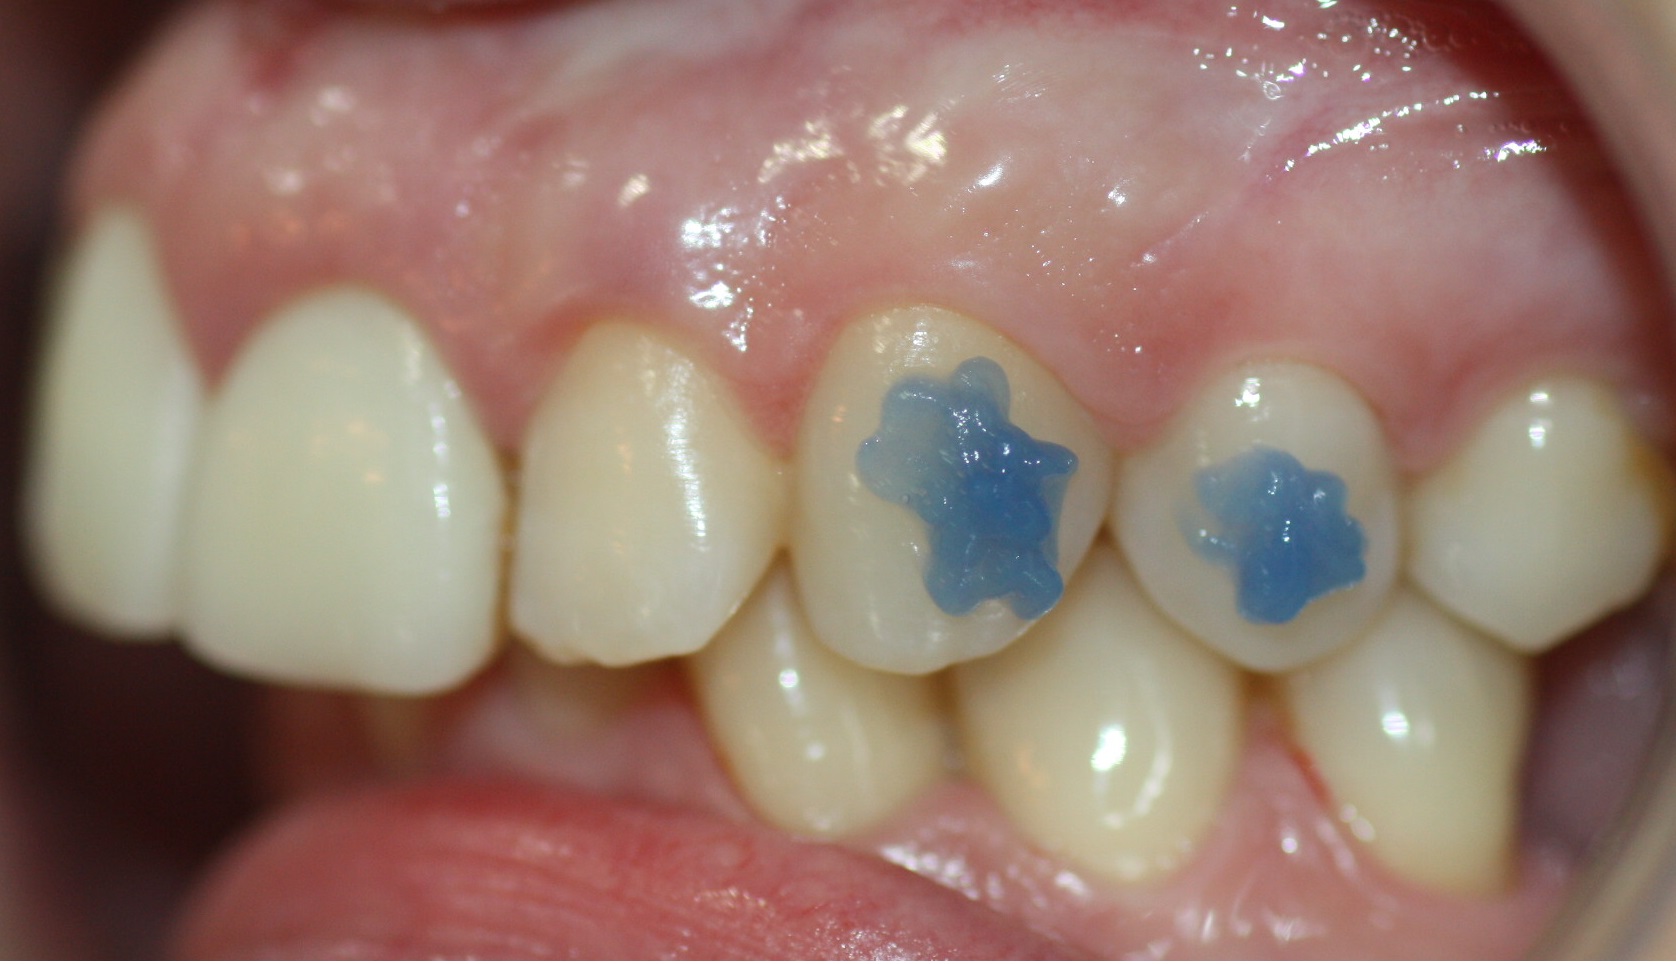 El ortodoncista aplicará el gel de ortofosfórico en la zona donde vaya a colocar el attachment